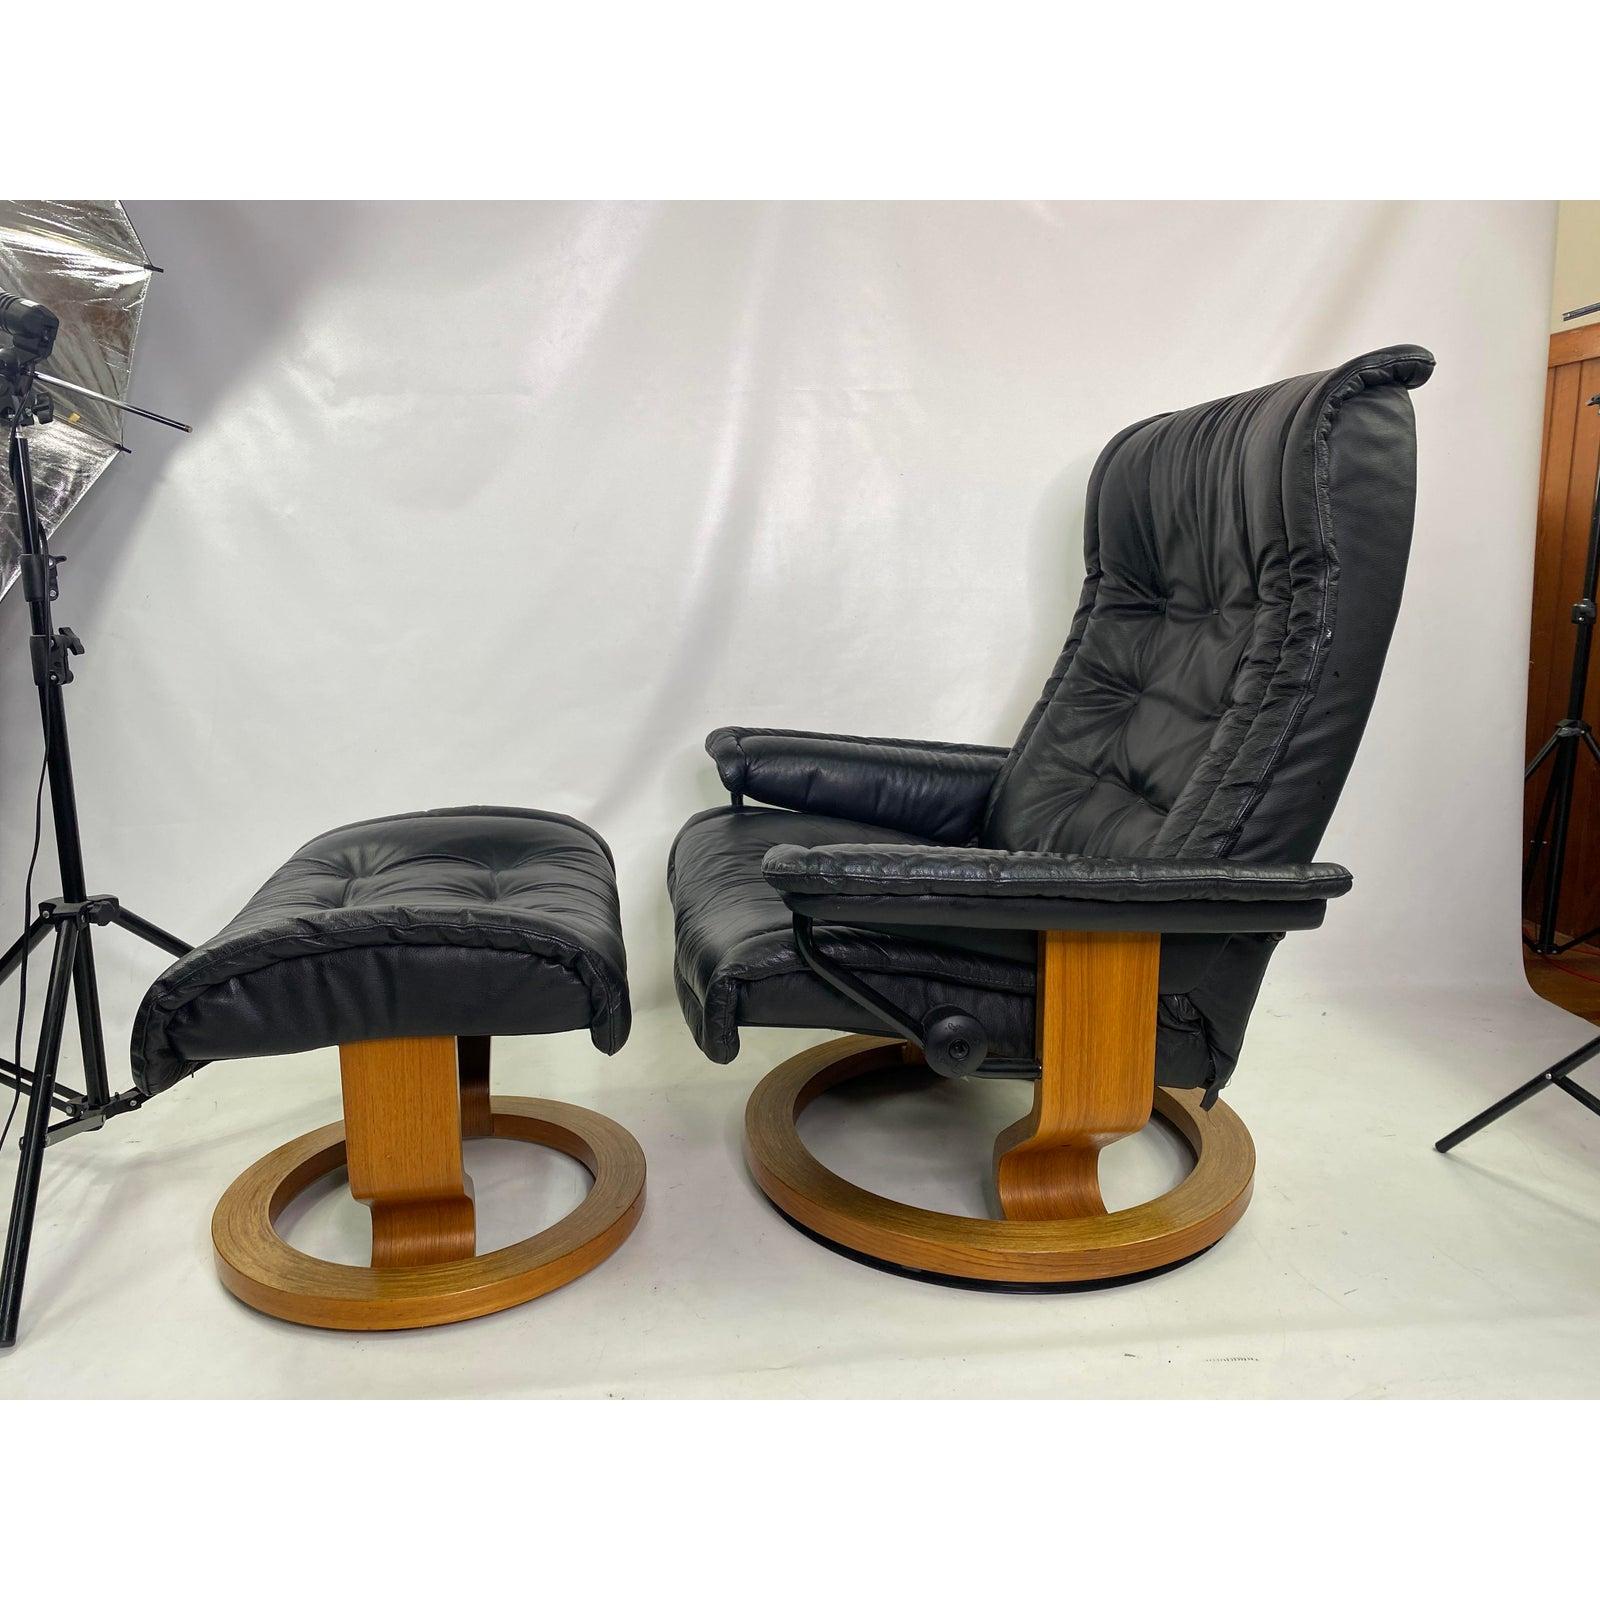 Vintage Scandinavian Modern Ekornes Stressless Recliner chair and ottoman

Ottoman measures.
H 15” D 17.5” W 23.5”.